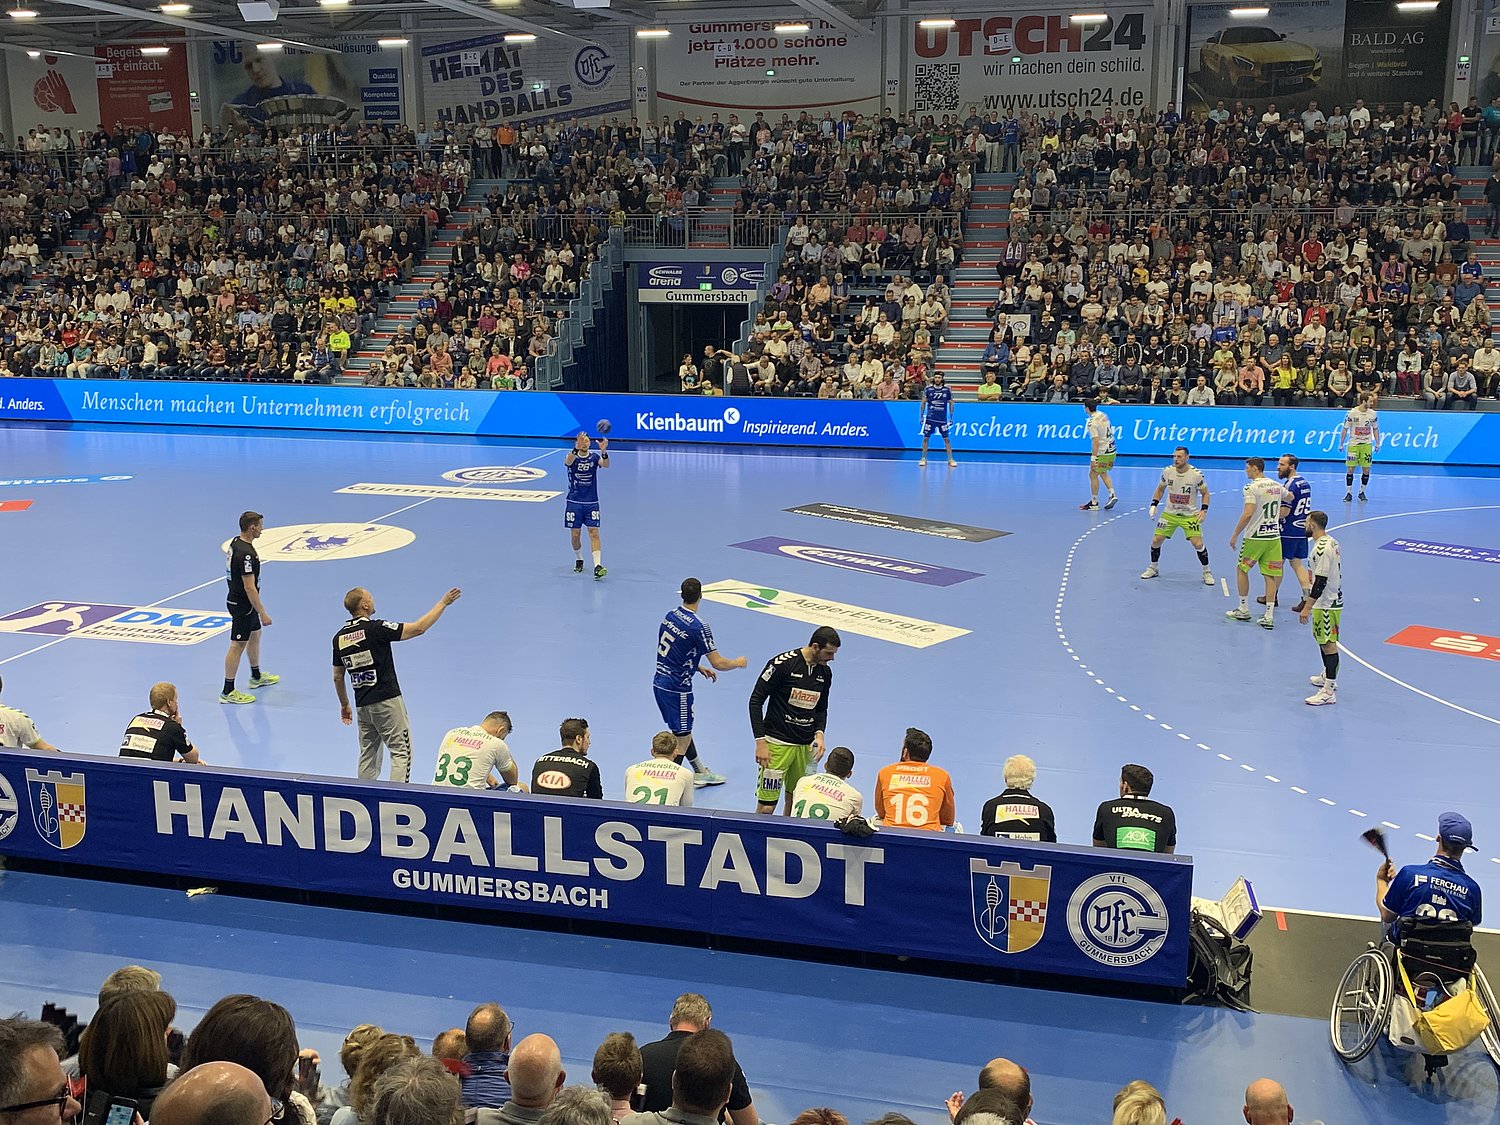 Heimspiel des Handballvereins VfL Gummersbach in der Schwalbe Arena